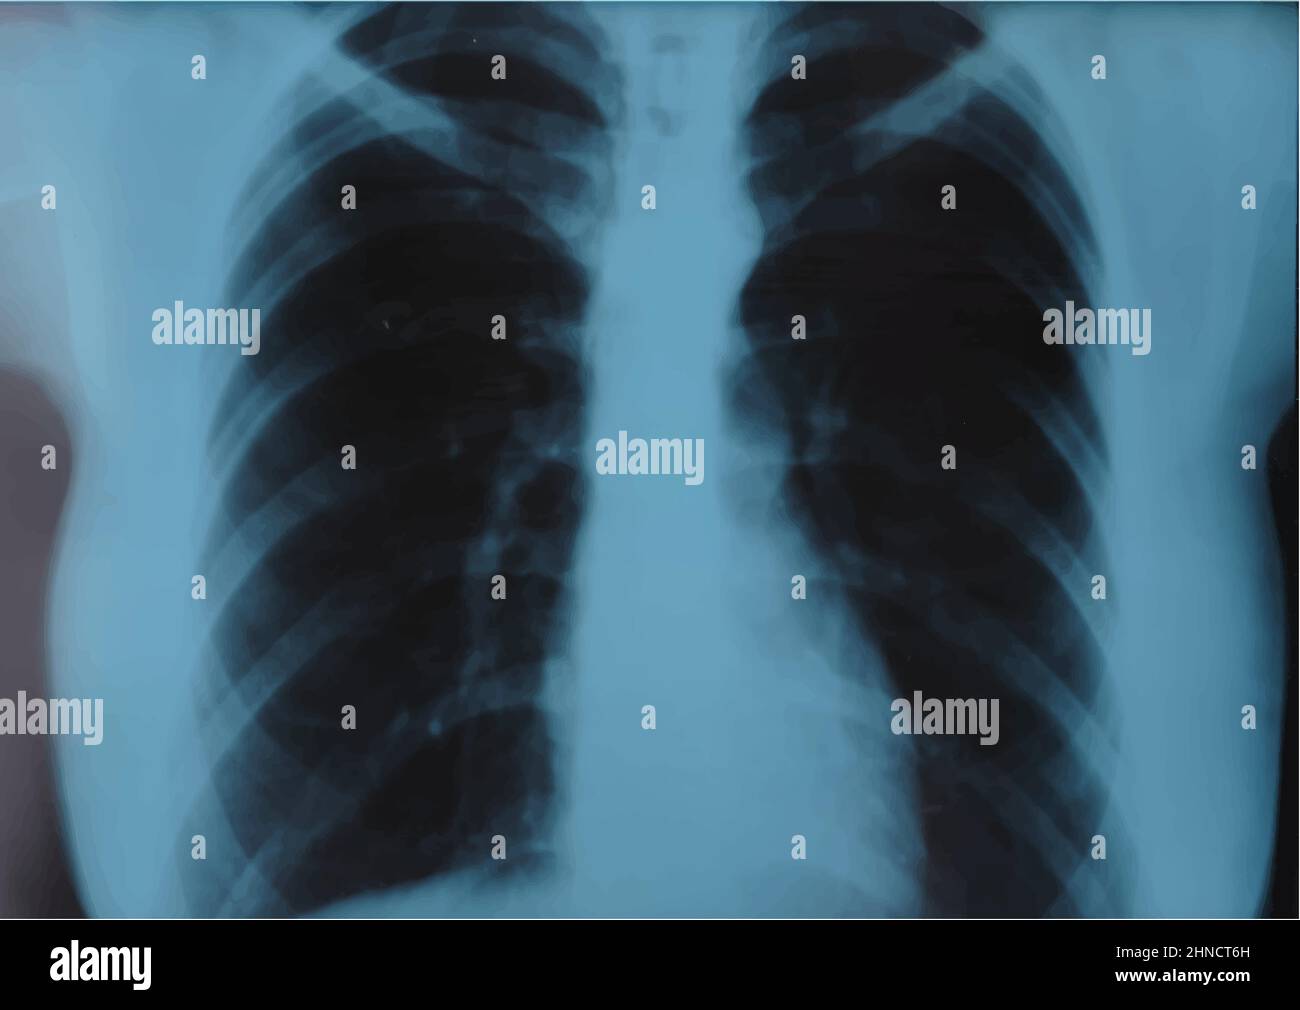 IRM de costillas, radiografía de la columna torácica, verificación de rayos X de tórax, imagen fluoroscópica. Ilustración de vector realista Ilustración del Vector